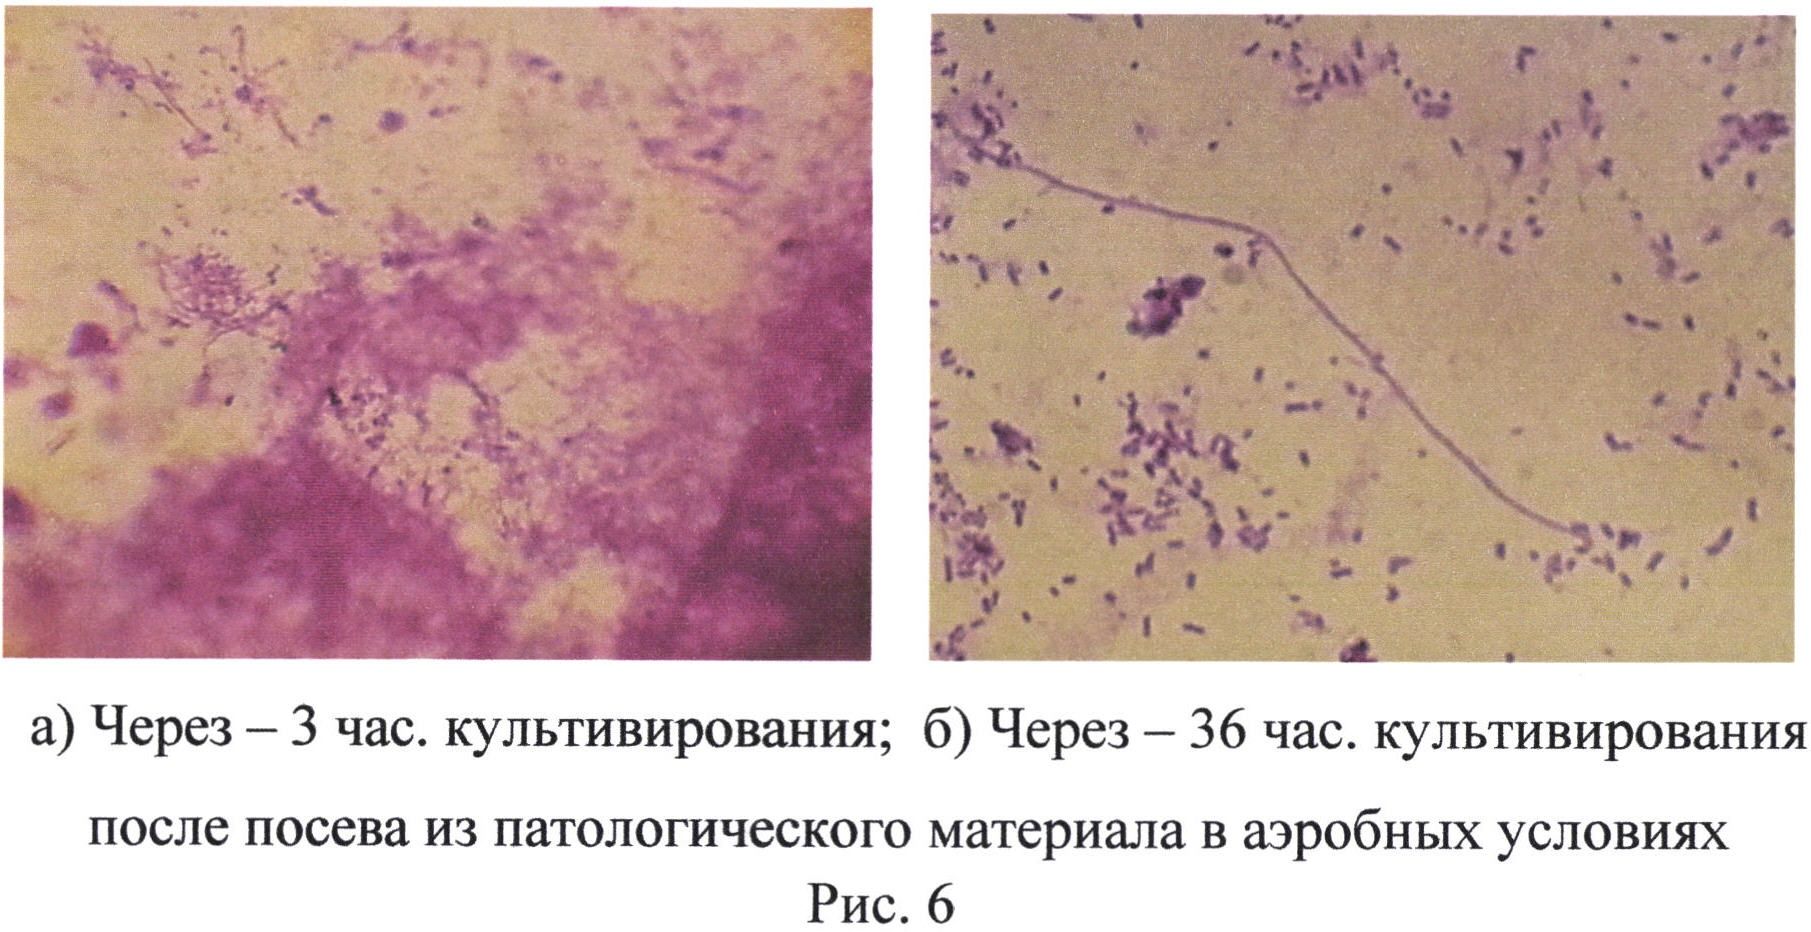 Некробактериоз микроскопия